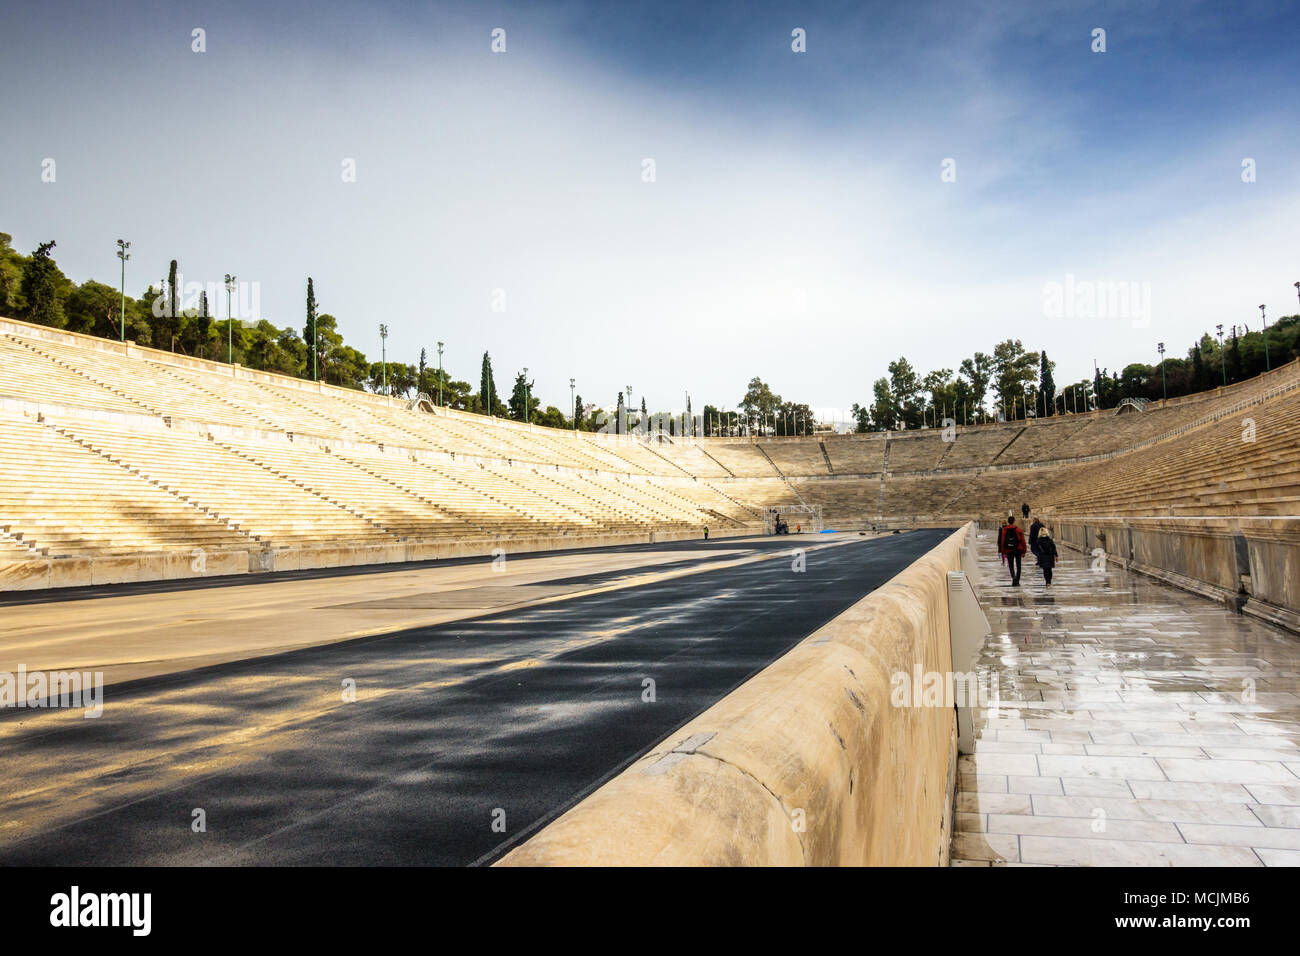 Vue arrière de personnes sur passerelle piétonne au stade Panathénaïque, Athènes, Grèce, Europe Banque D'Images